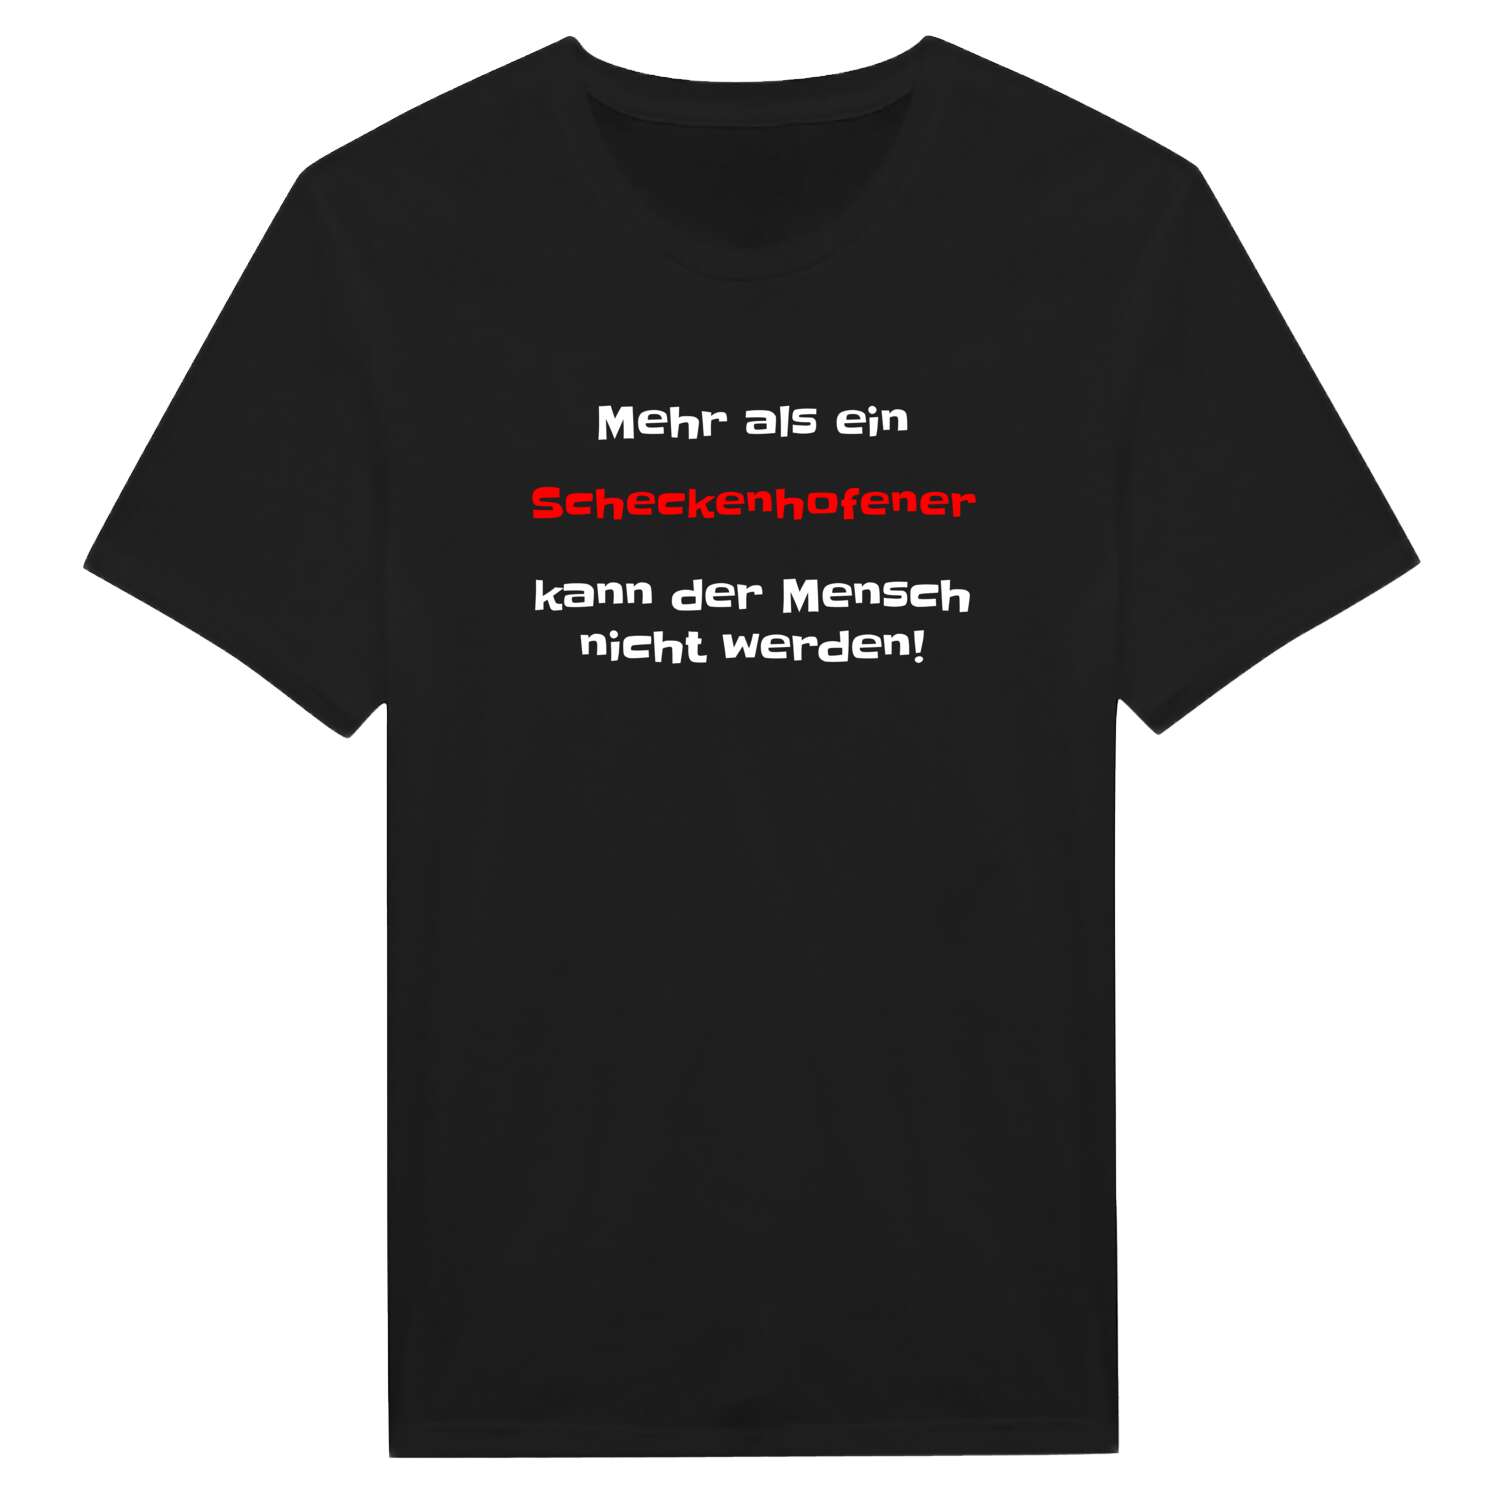 Scheckenhofen T-Shirt »Mehr als ein«